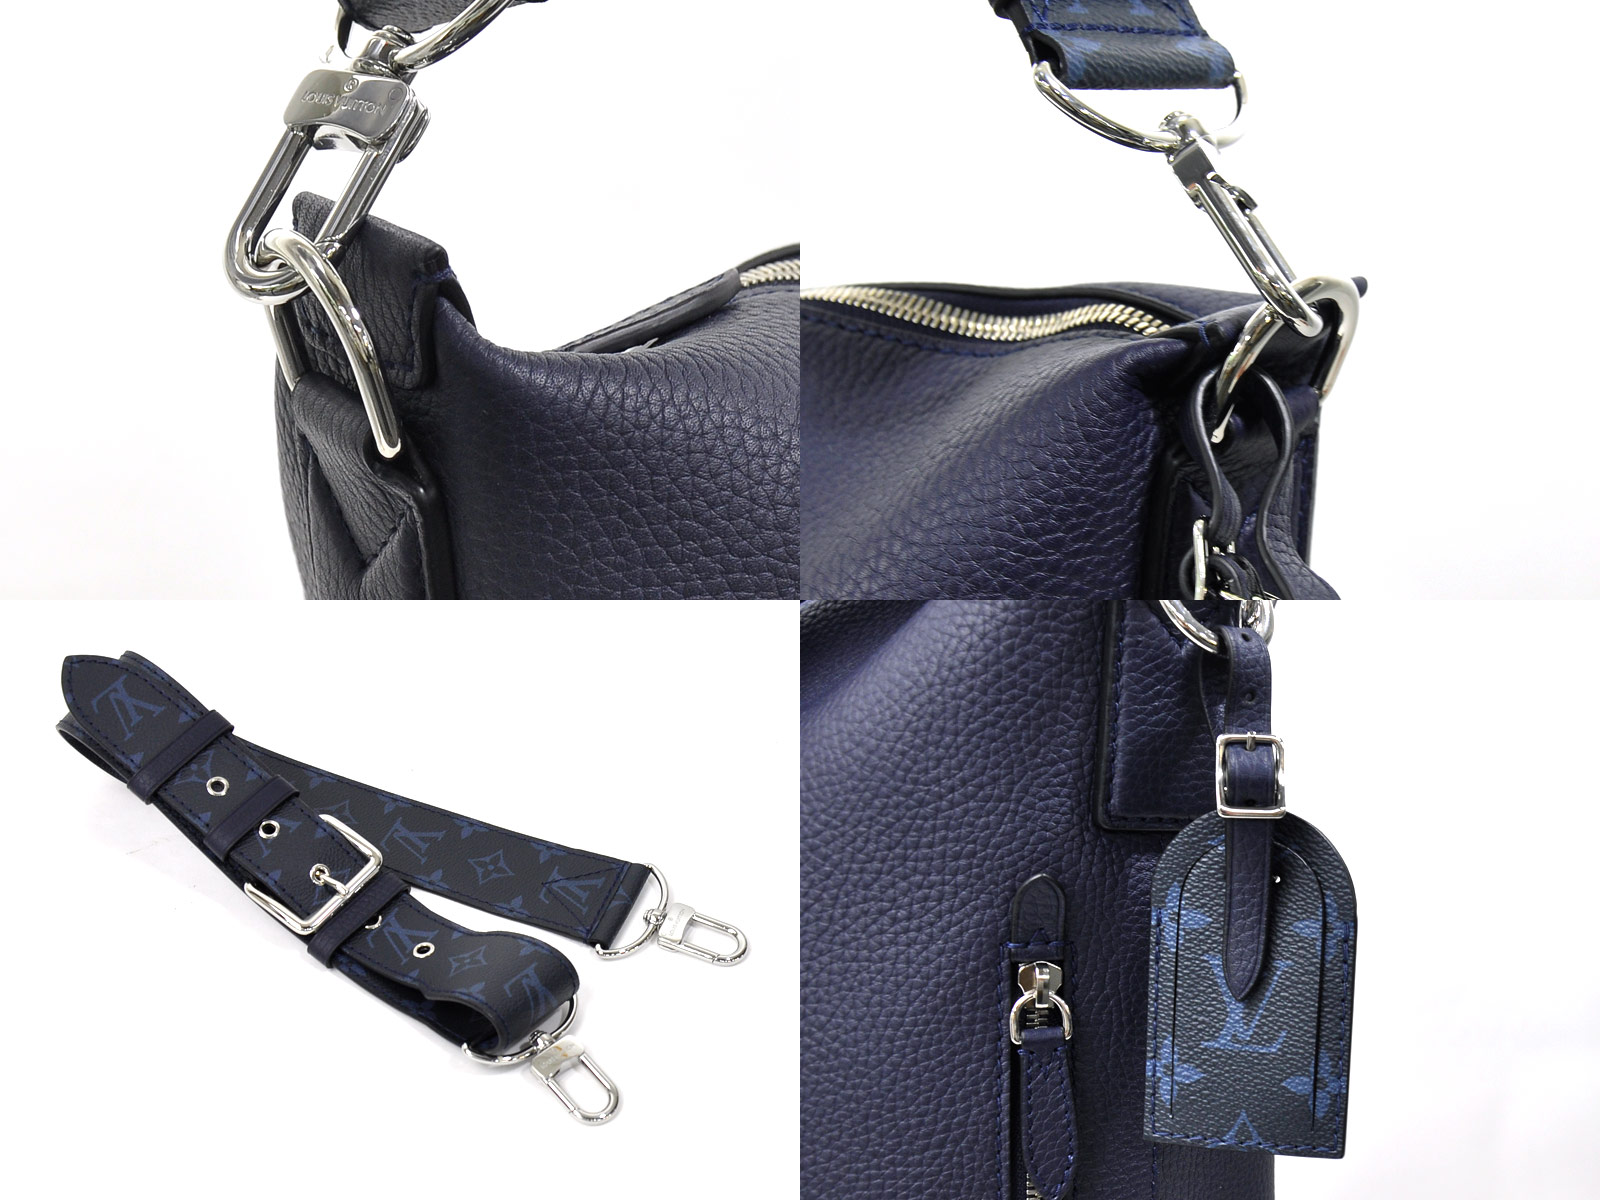 Auth Louis Vuitton East side duffel Shoulder Bag Navy Leather M53438 - 97871c | eBay